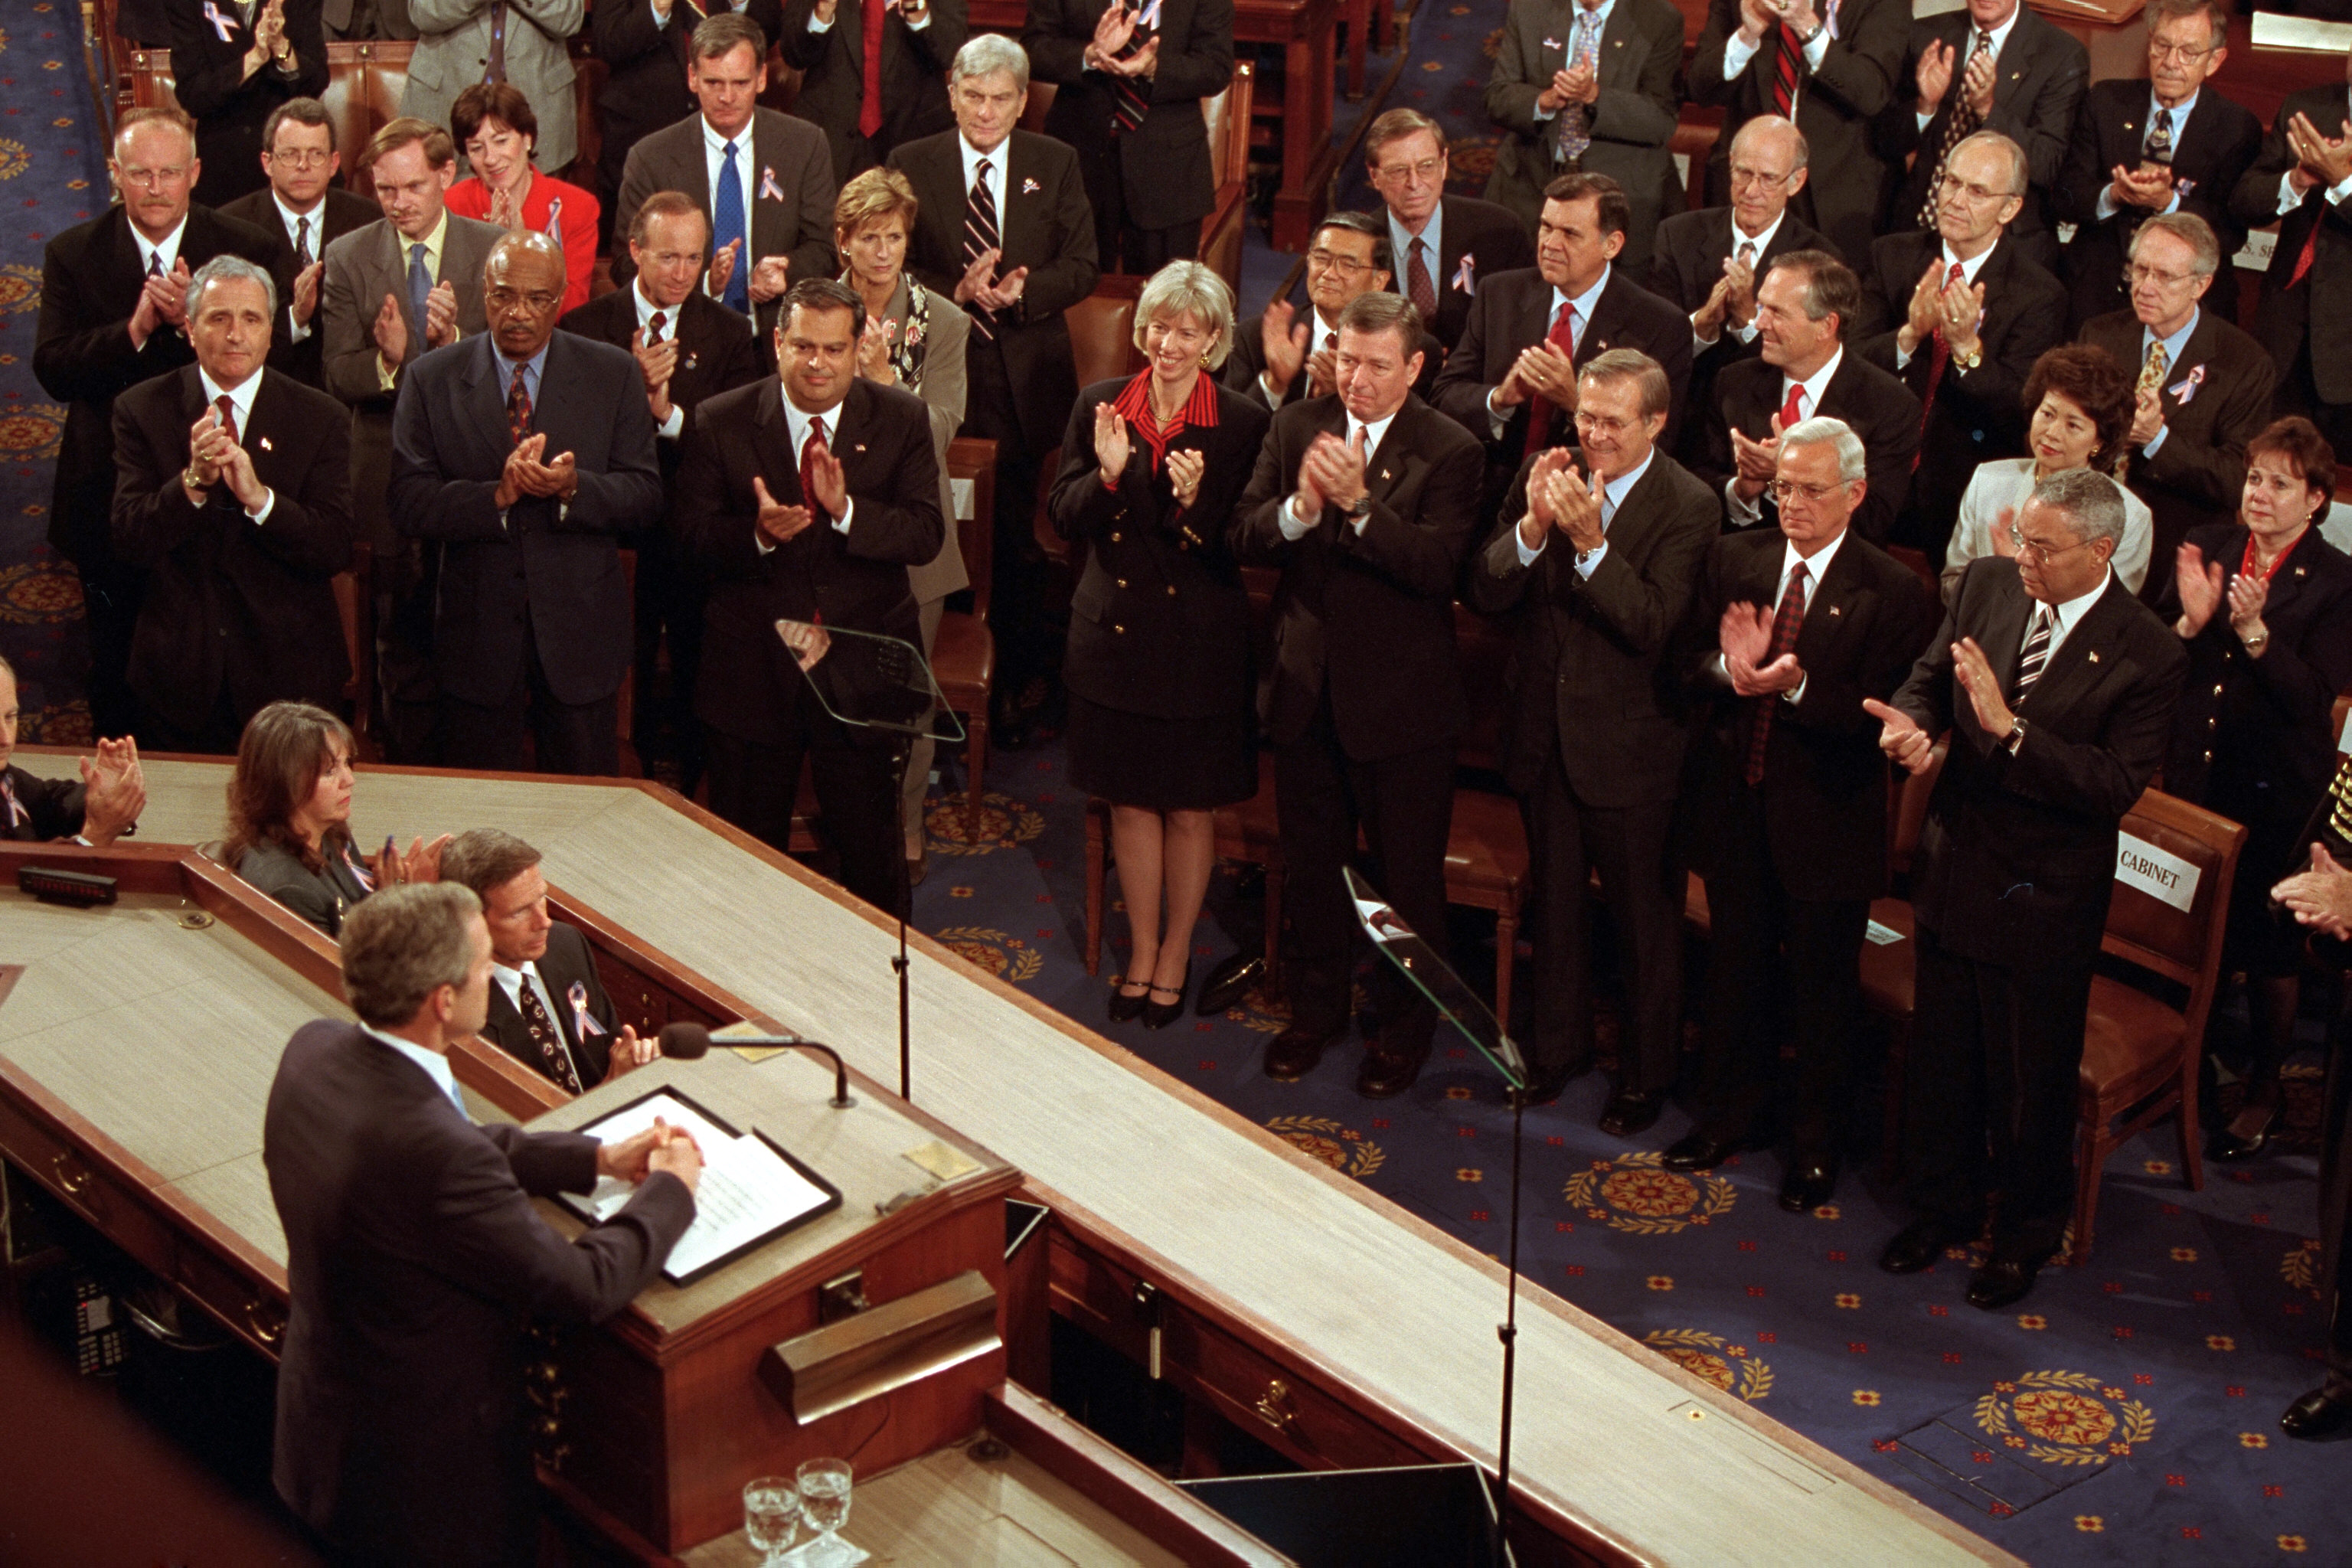 43. George W. Bush (2001-2009) – U.S. PRESIDENTIAL HISTORY